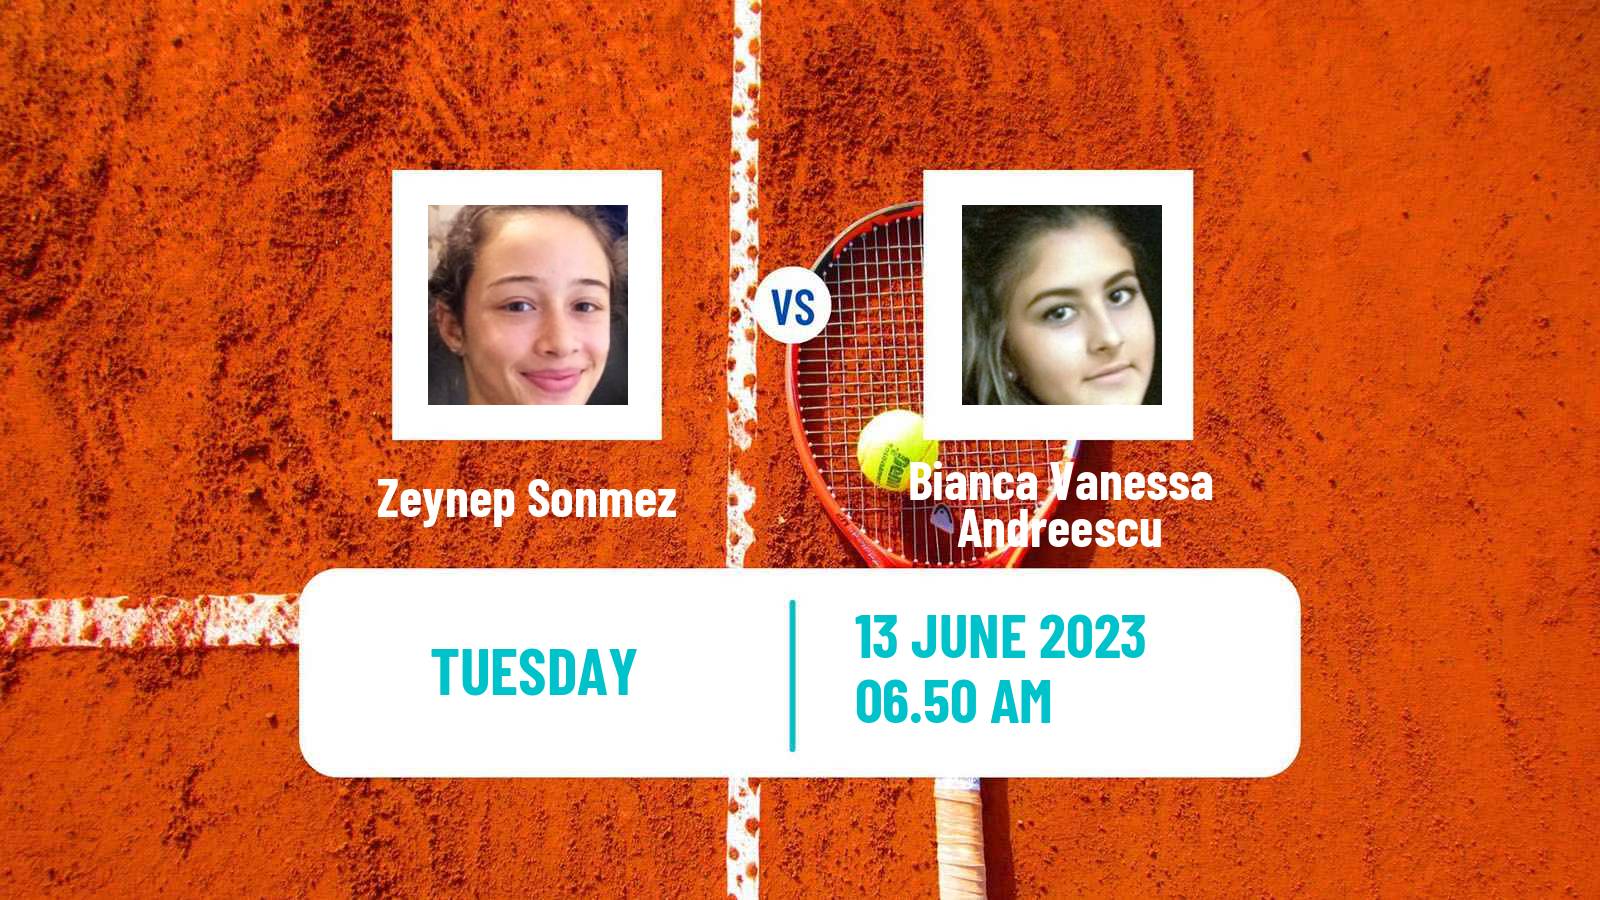 Tennis WTA Hertogenbosch Zeynep Sonmez - Bianca Vanessa Andreescu